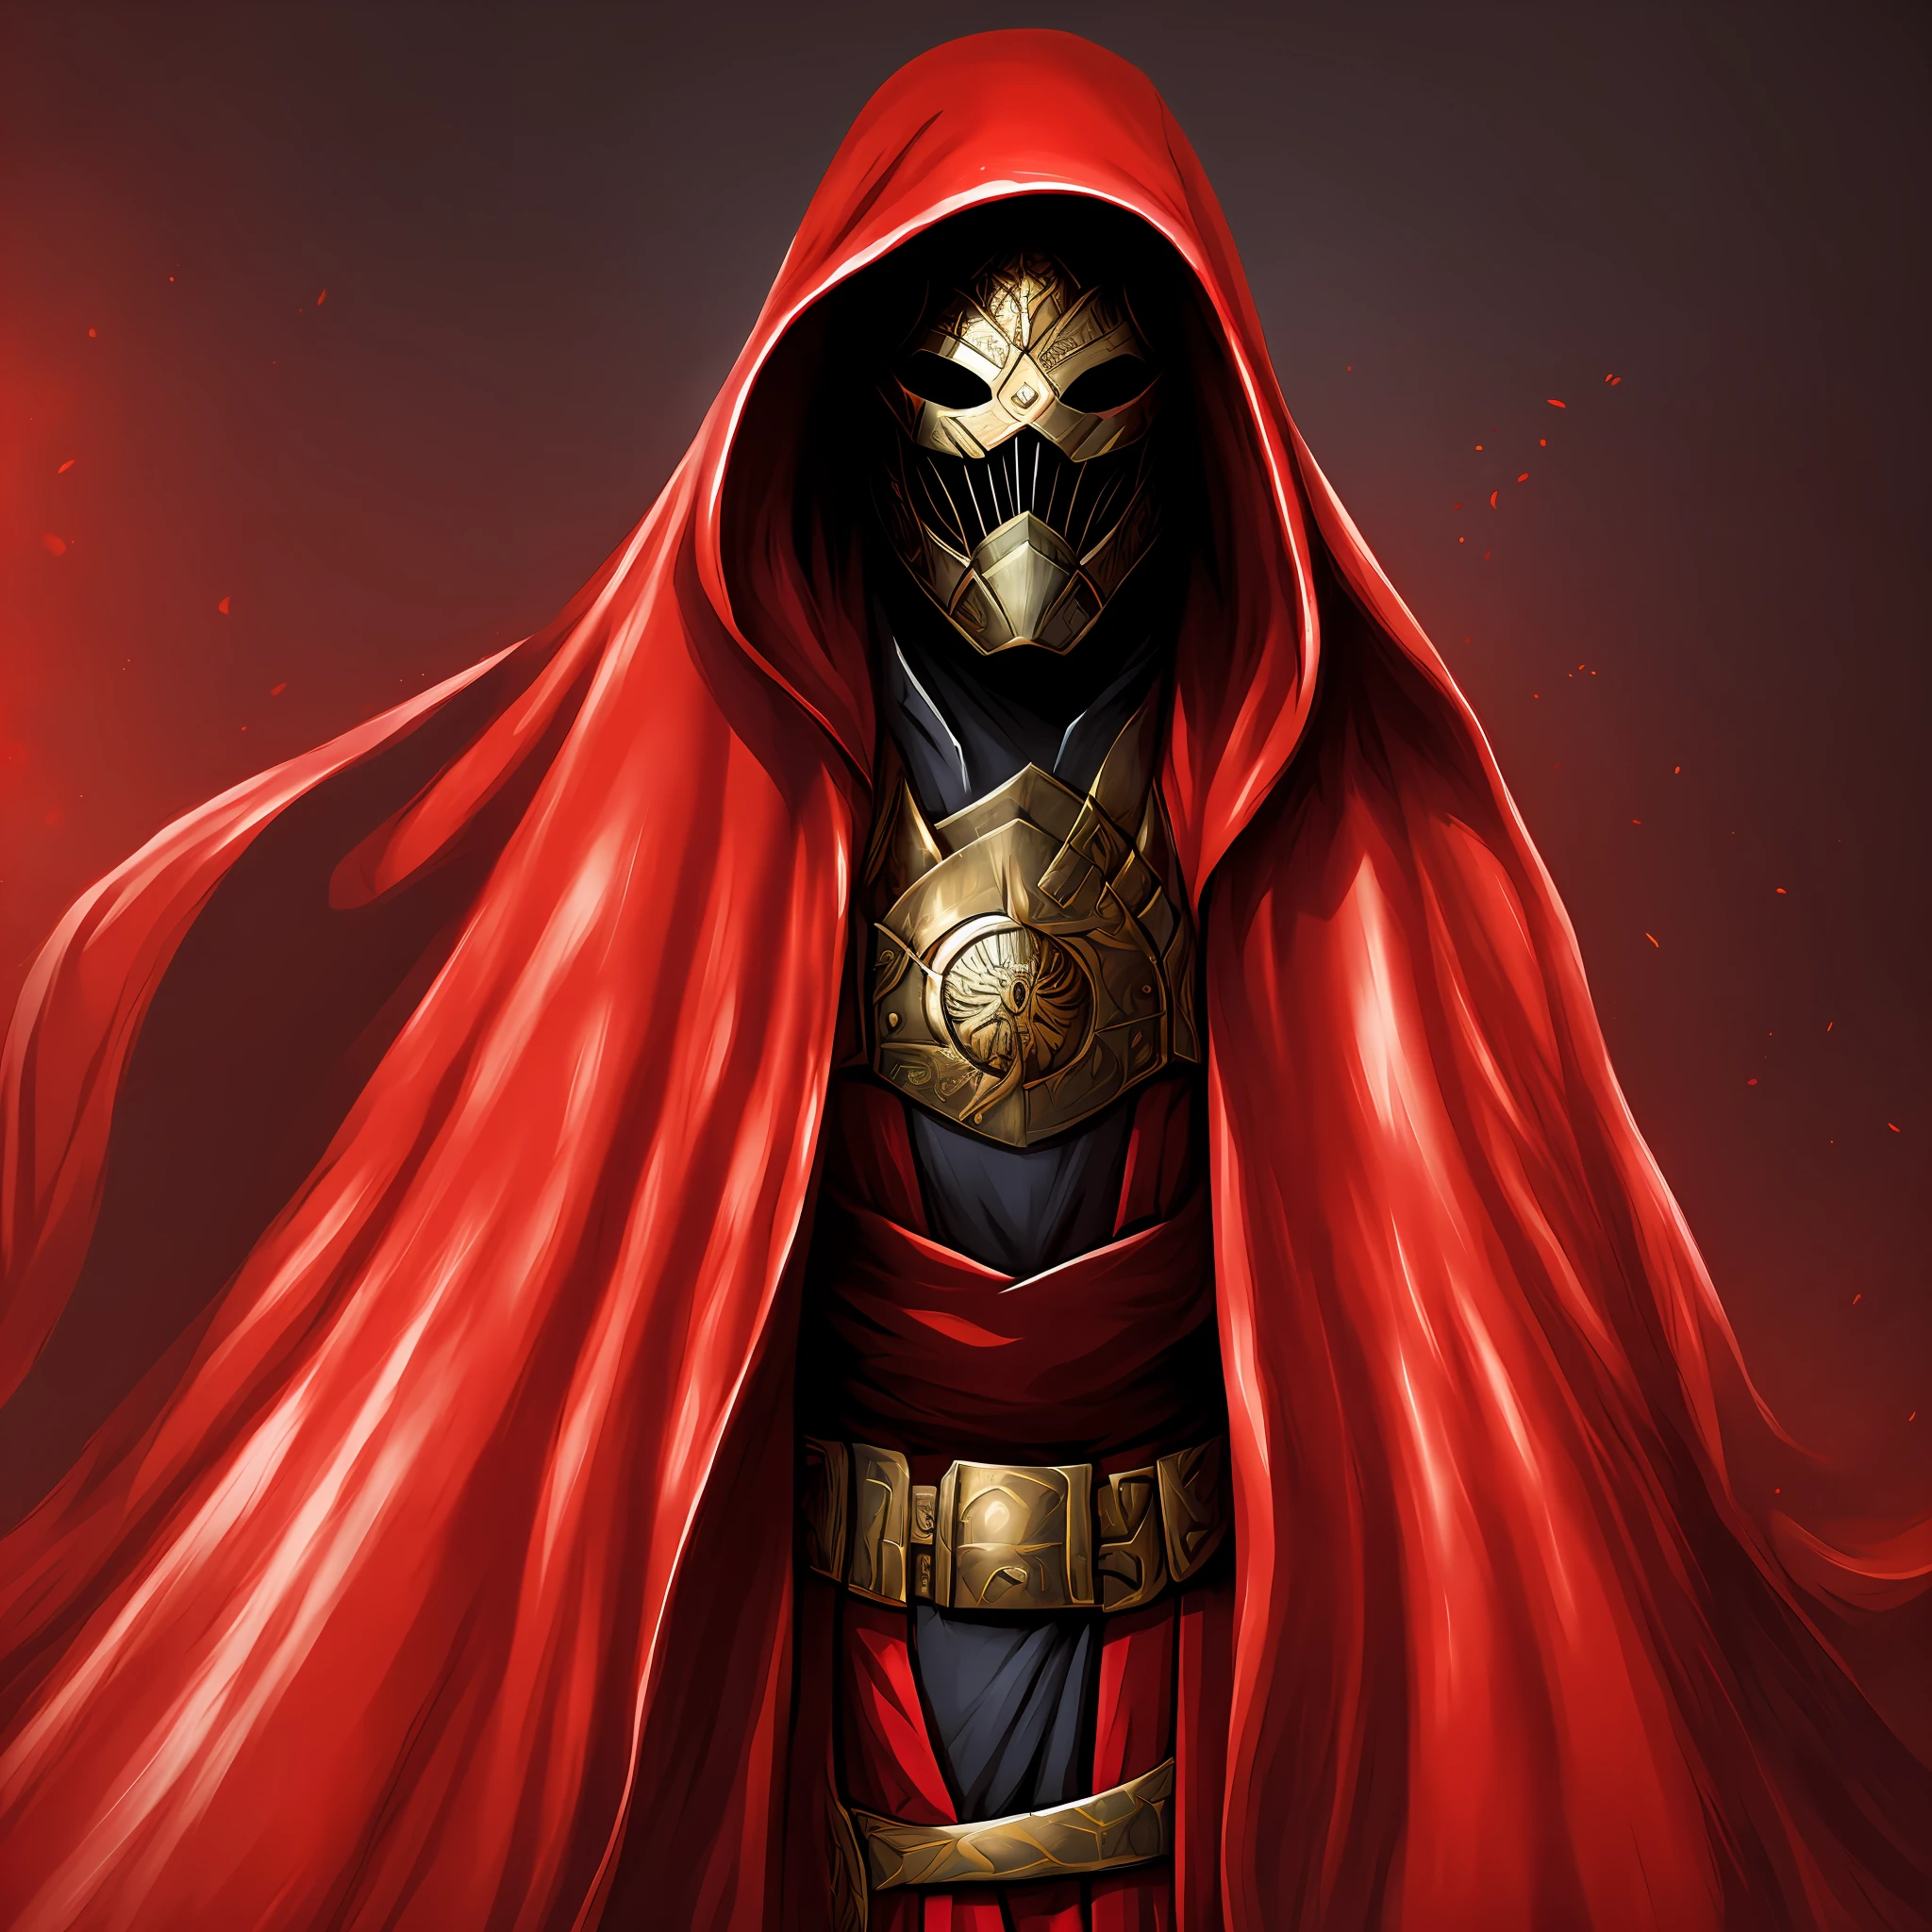 盜賊的首領、災難々Shishi Armor、面具、紅色斗篷、背景黑暗--自動